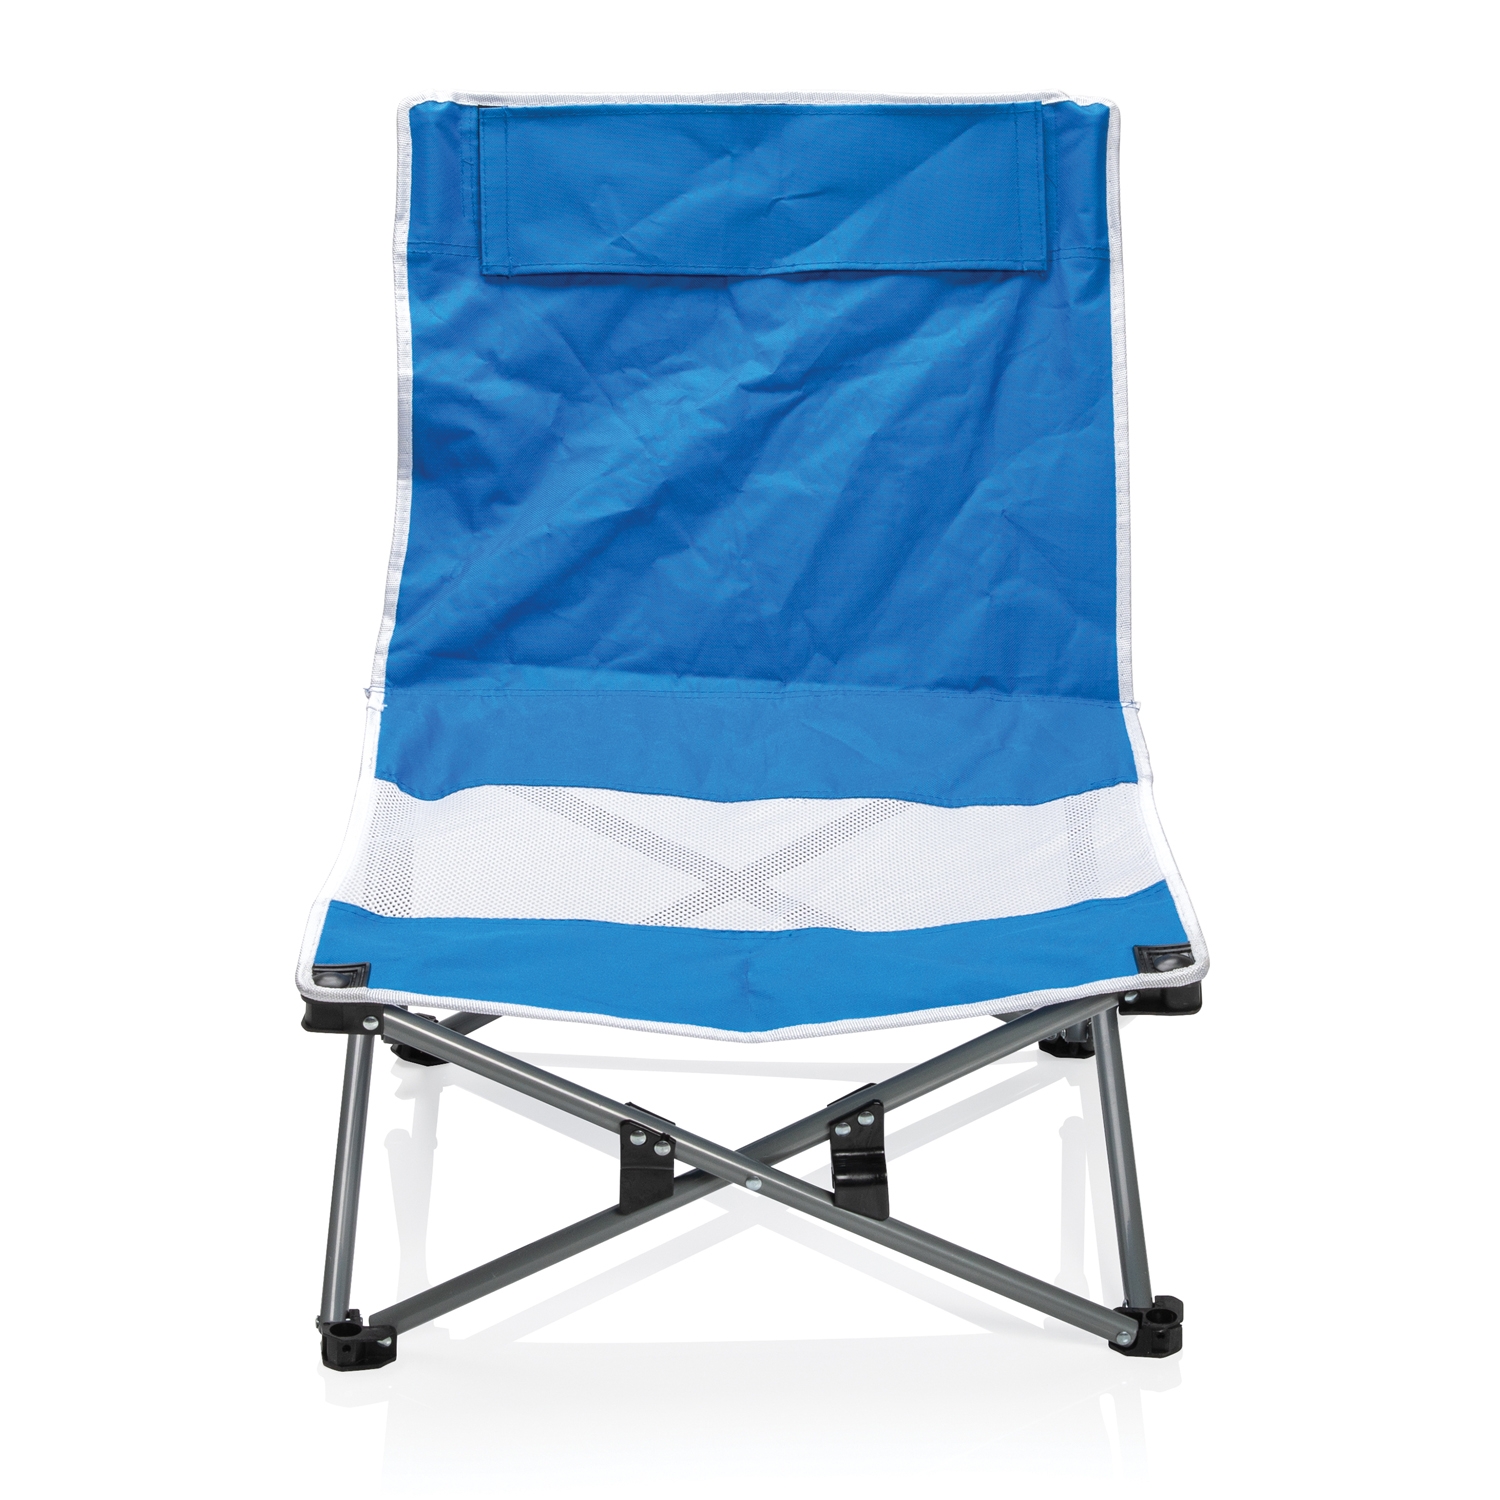 Складное пляжное кресло с чехлом с логотипом, материал полиэстер; сталь -цена от 3750 руб